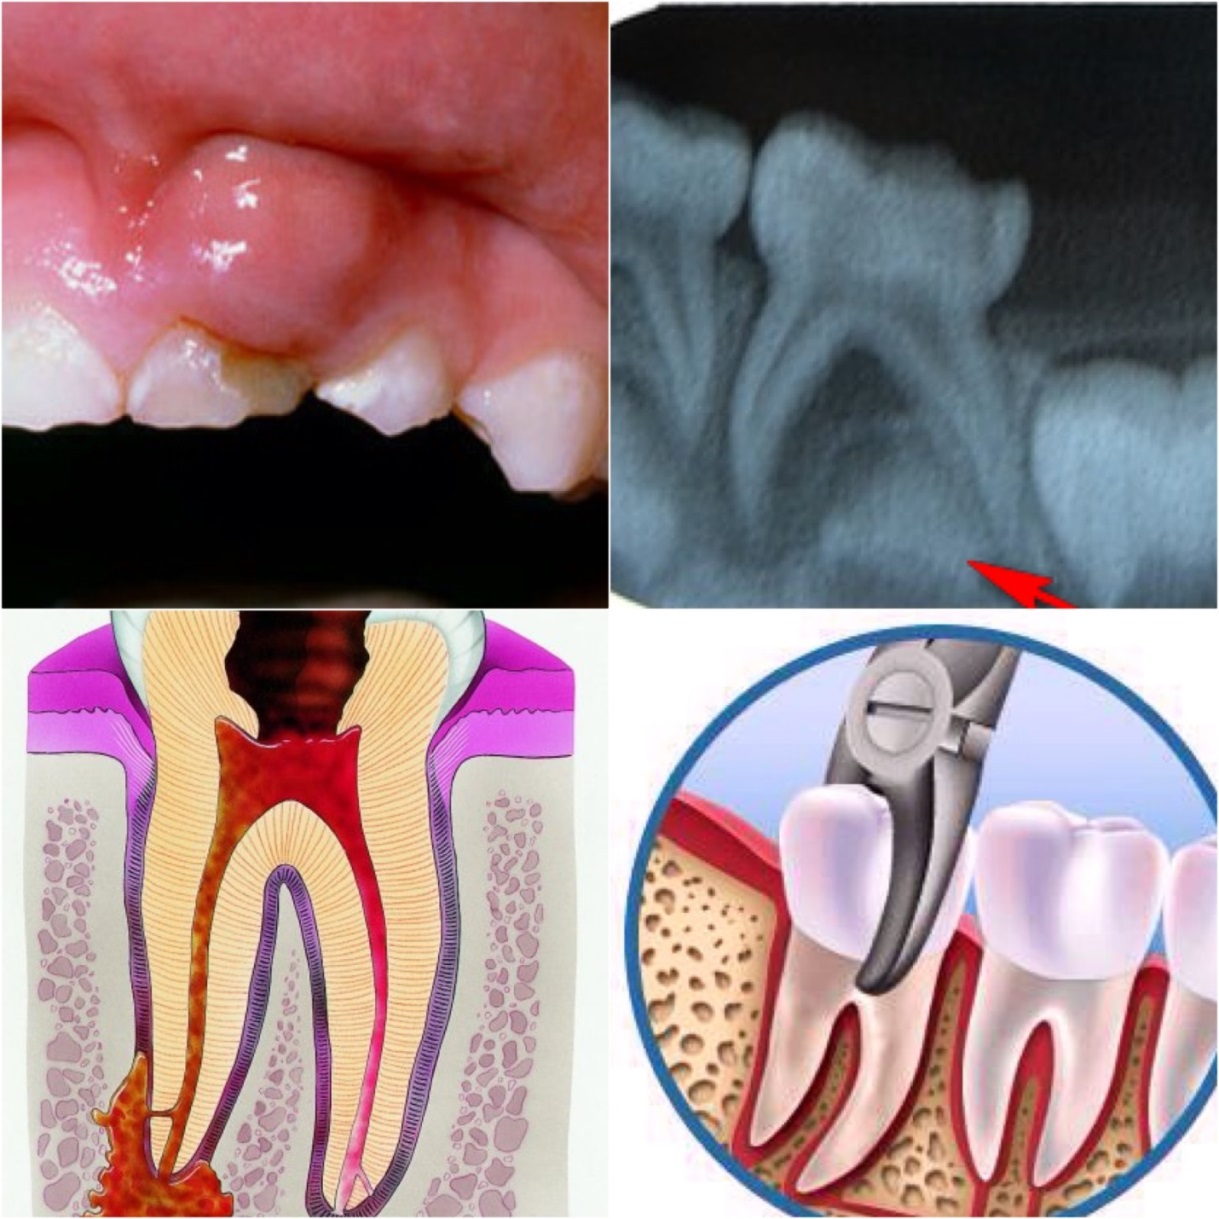 Лечение пульпита и периодонтита молочных зубов thumbnail